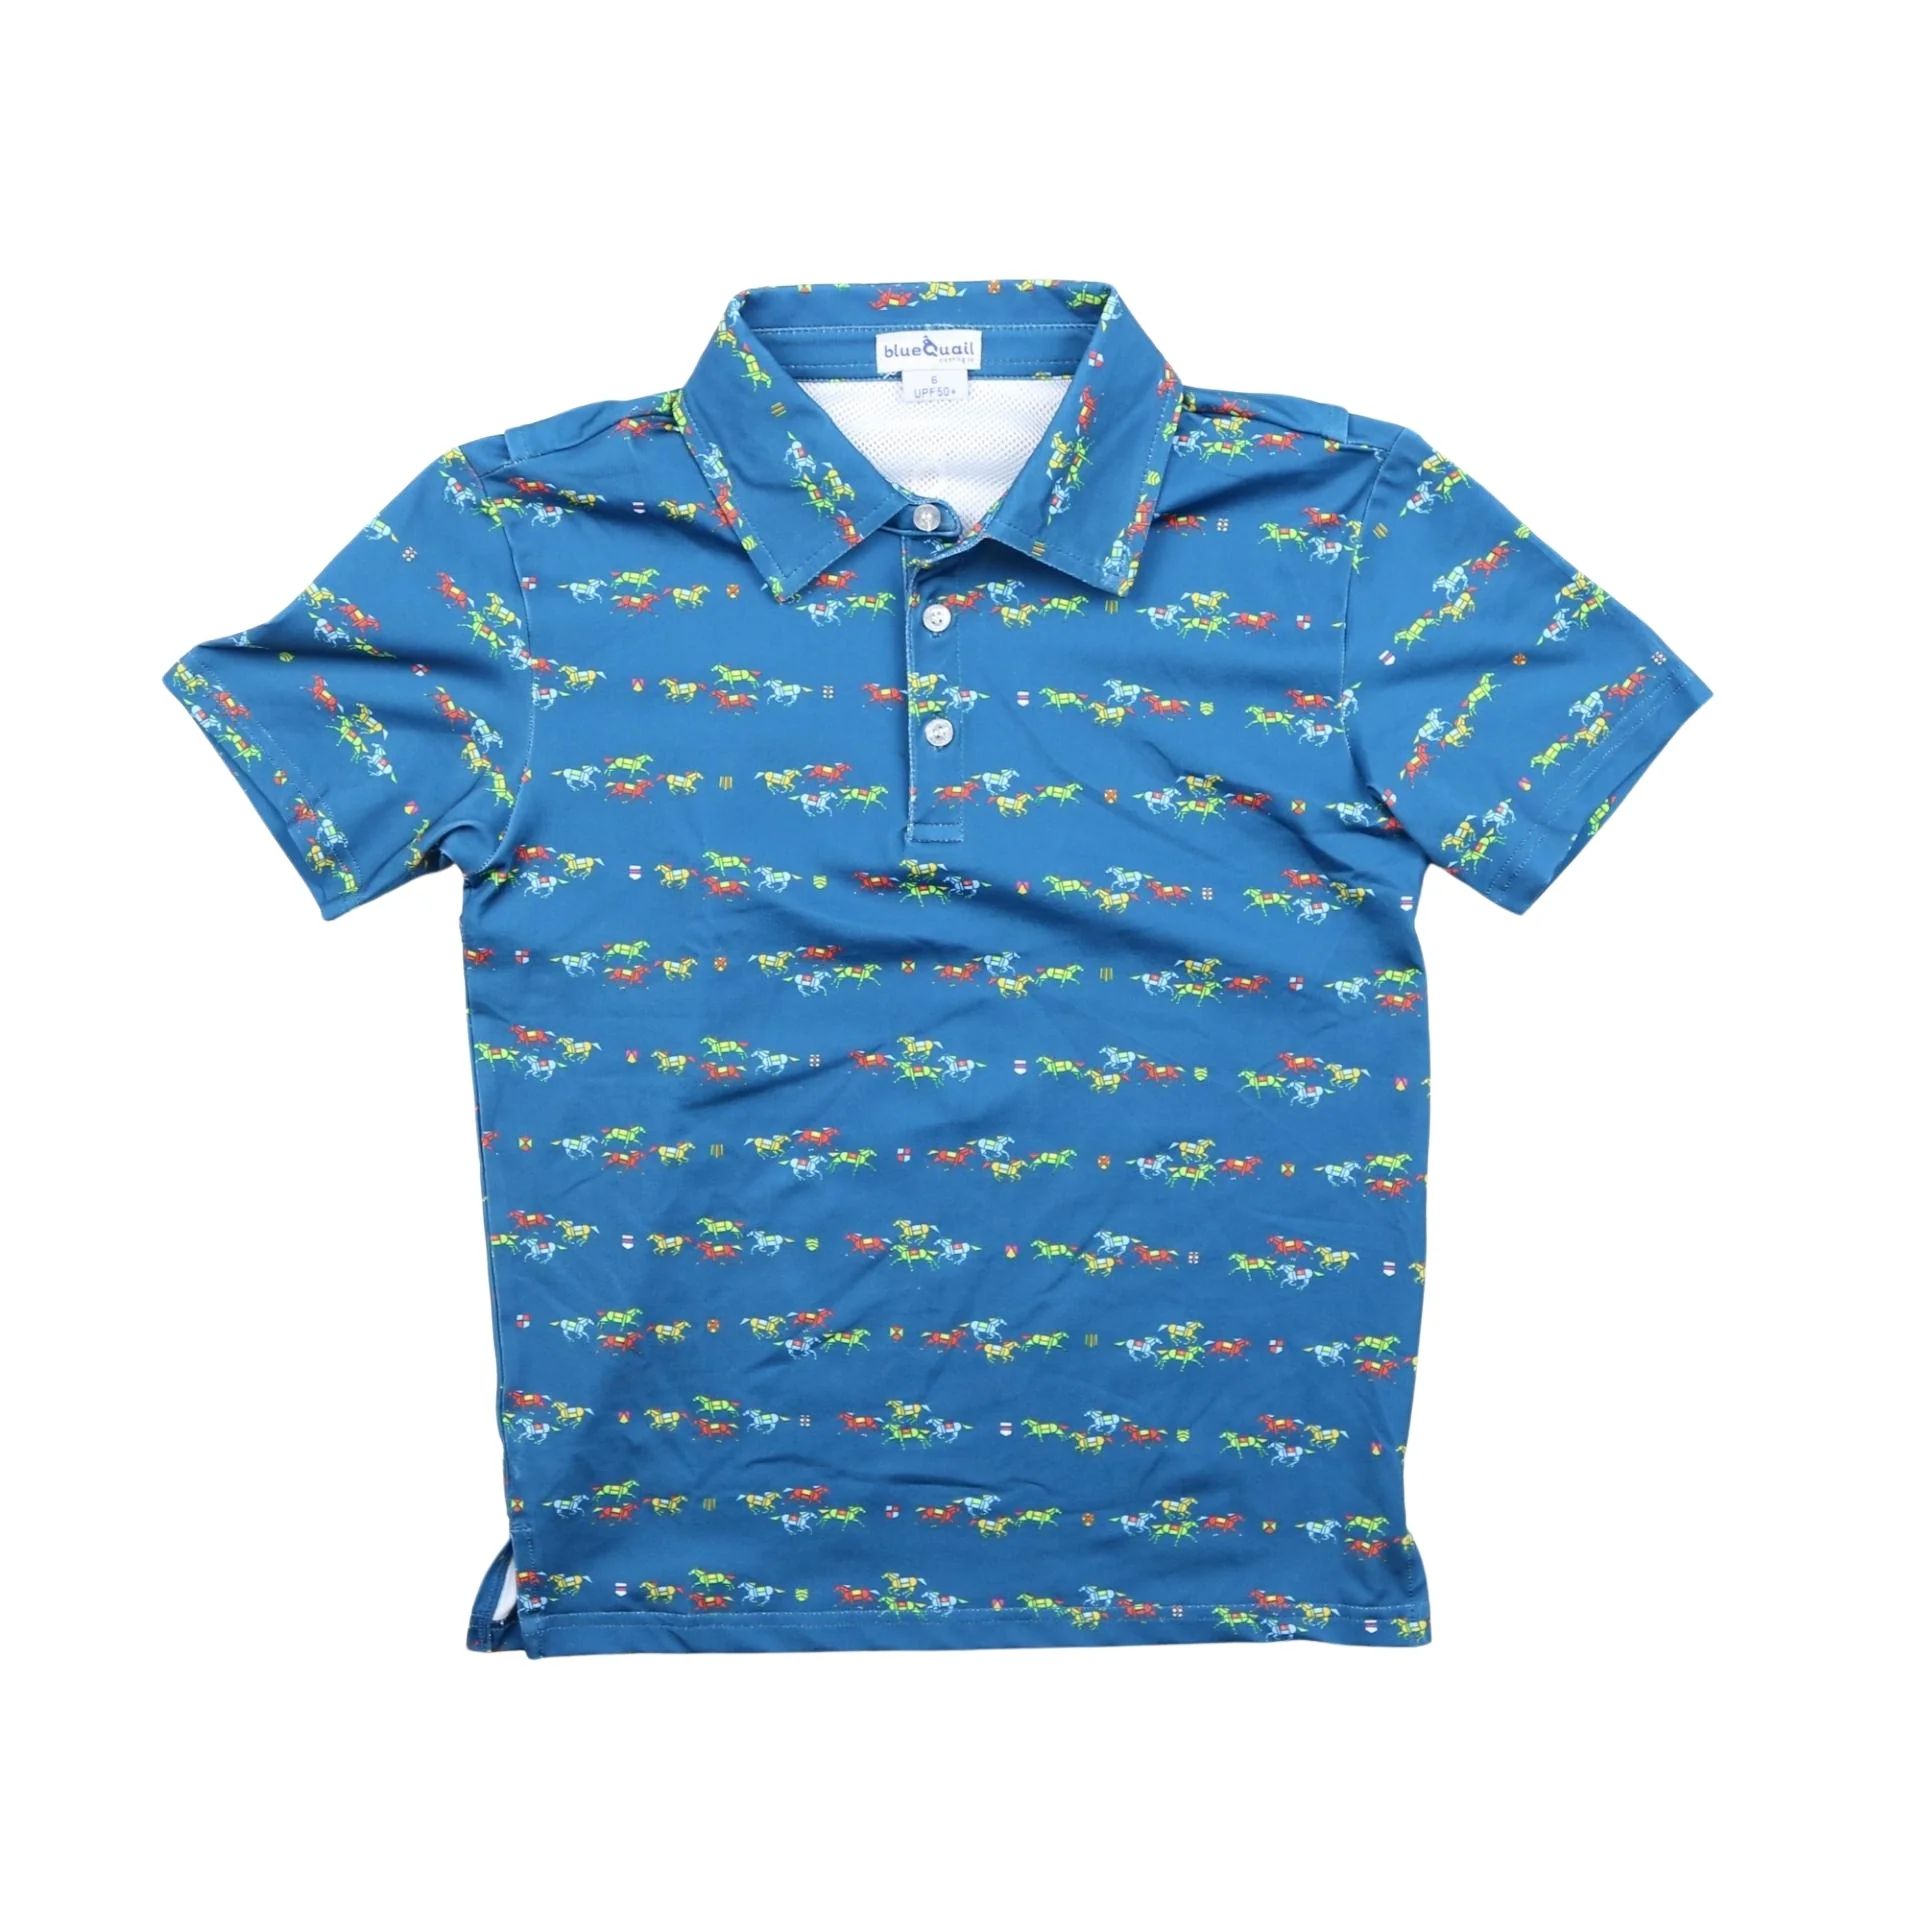 Golf Polo Short Sleeve Shirt | BlueQuail Clothing Co. | BlueQuail Clothing Co.